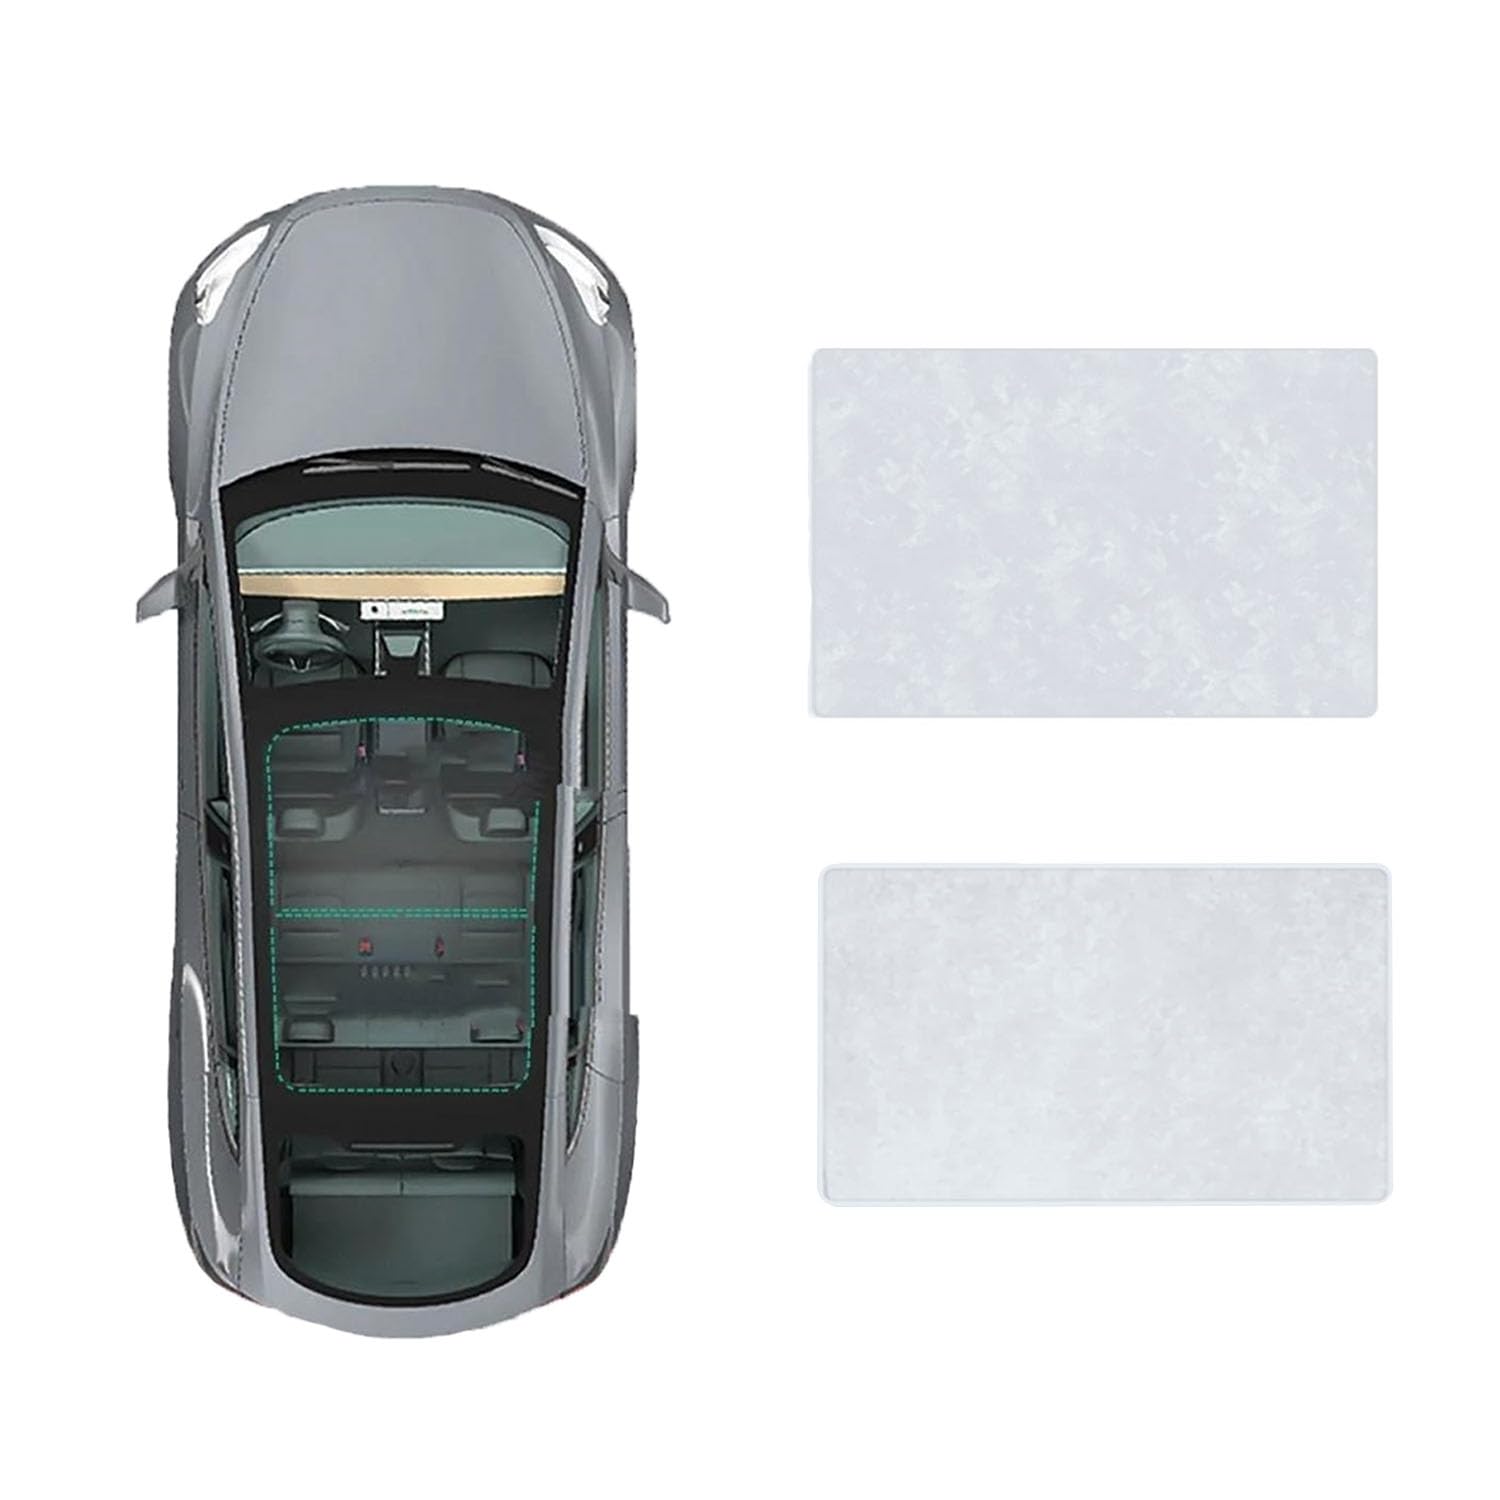 Auto-Schiebedach-Beschattung Für Land Rover Range Rover 2023-,Auto Schiebedach Sonnenschutz Dach Wärme Isolierung Beschattung Innen Auto Zubehör,B-Gray white Suede von LLL6zzzK